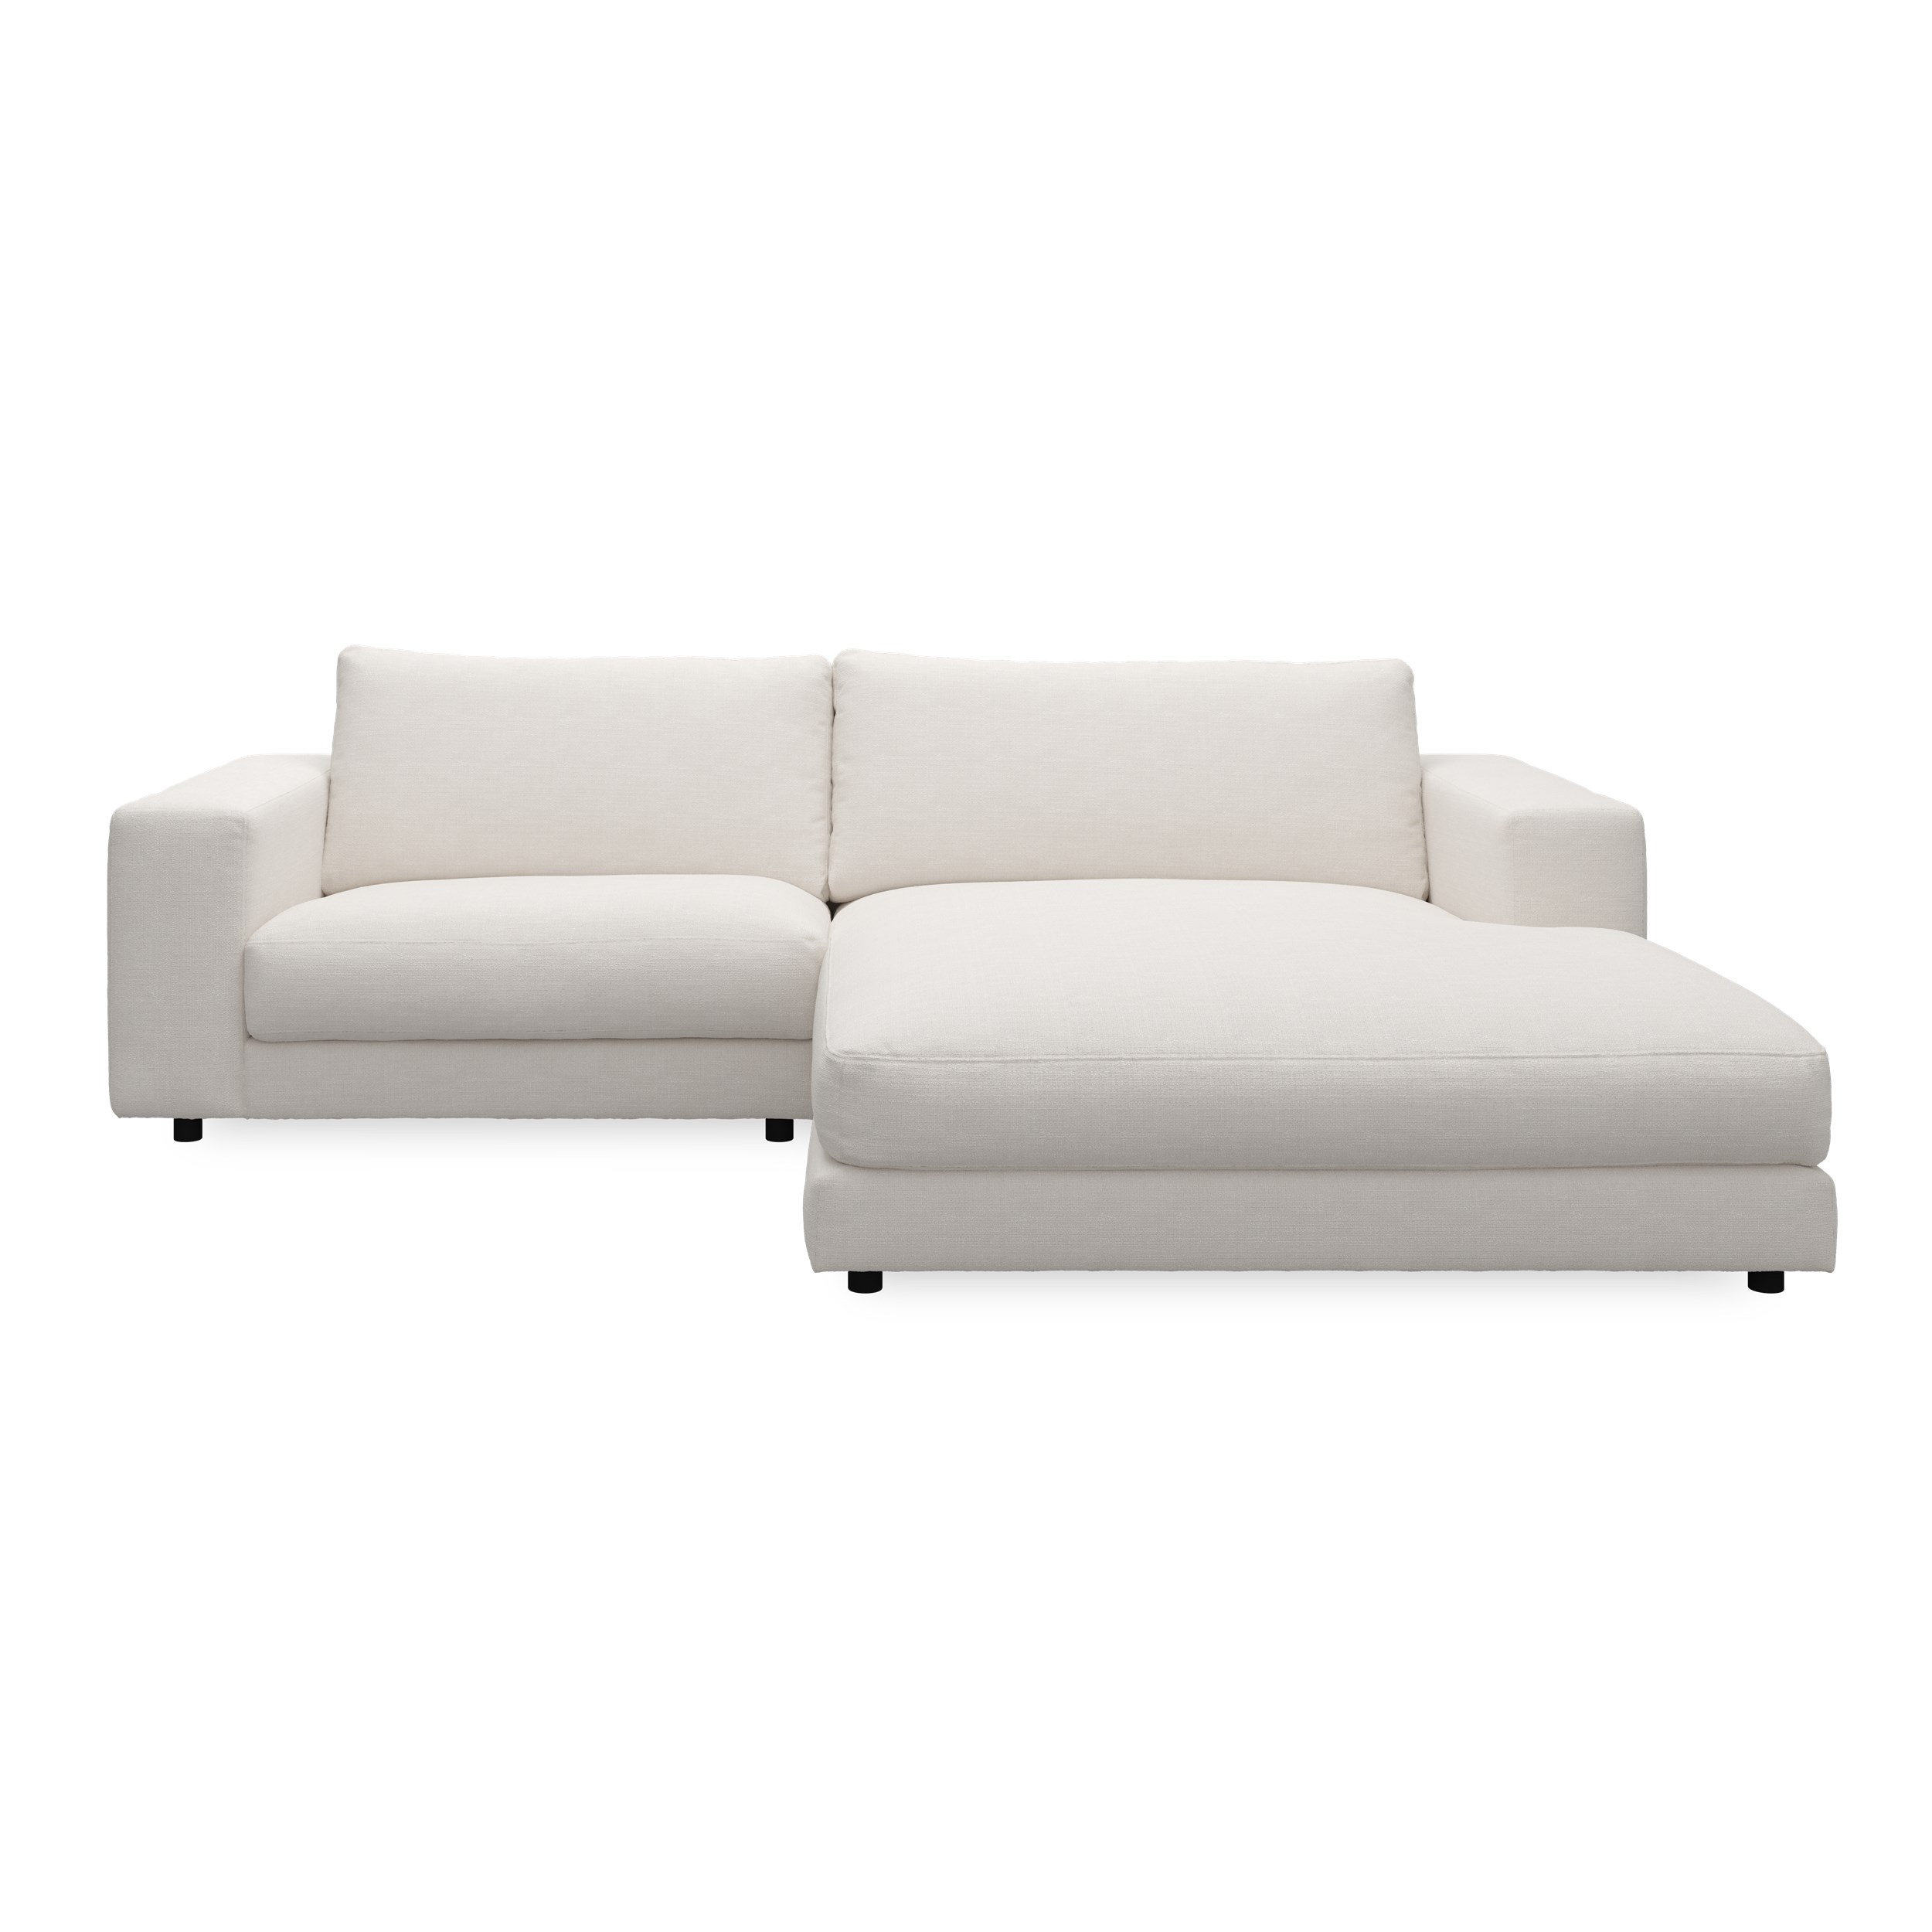 Bennent högervänd soffa med schäslong - Picasso Natur klädsel, ben i svart plast och S:skum/fib/din/sili R:Dun/skum